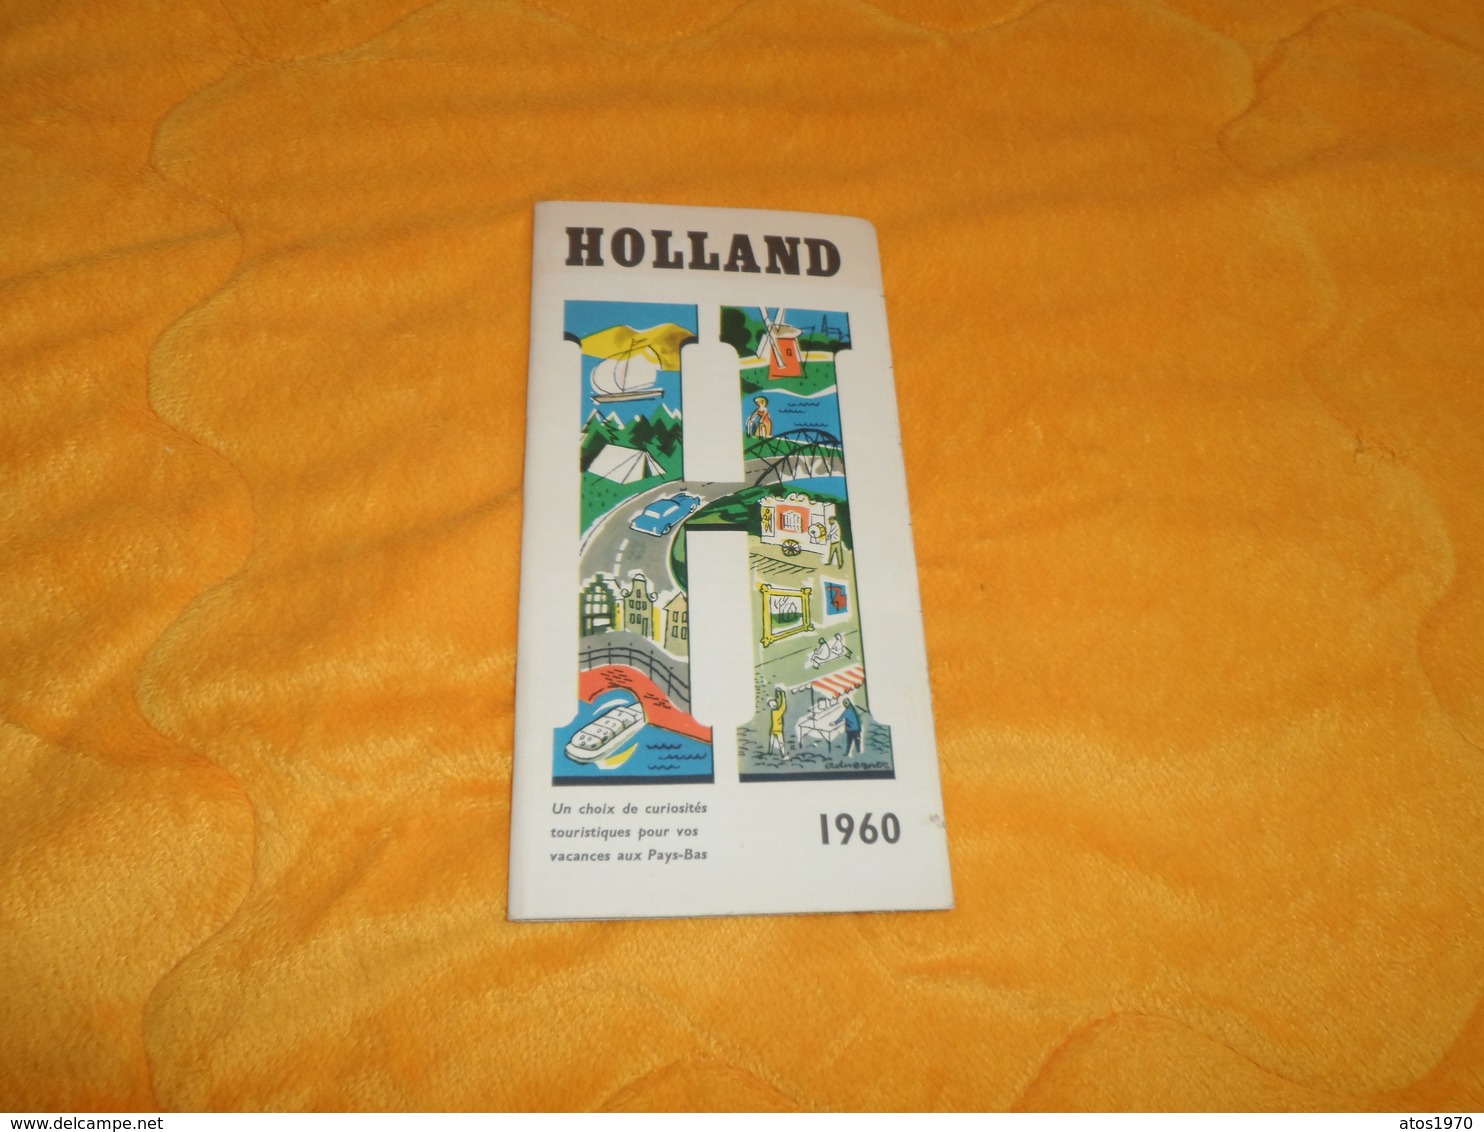 LIVRET DE 34 PAGES AVEC CARTE HOLLAND PAYS BAS DE 1960... - Tourism Brochures